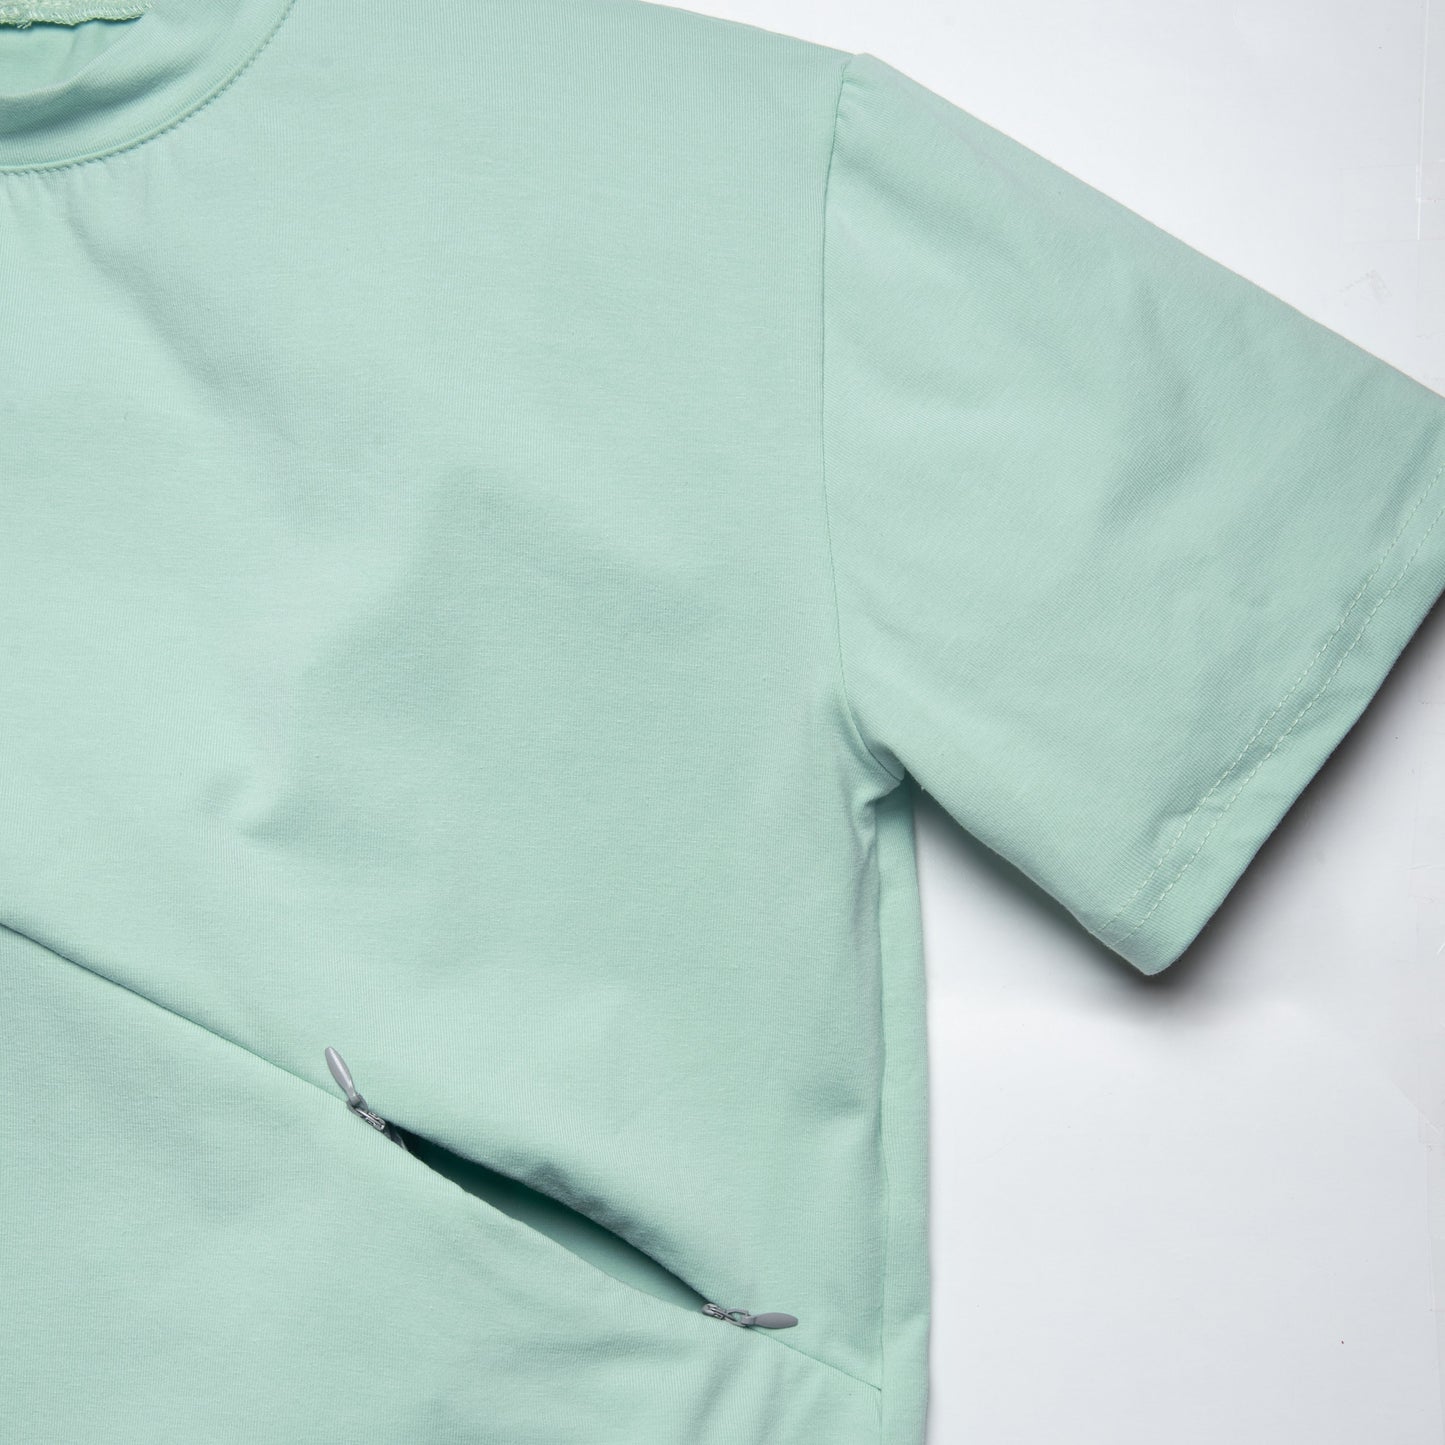 XXLARGE - PAPARMANE t-shirt boyfriend 3 en 1 maternité, allaitement, postpartum - léger défaut ( réf #229)